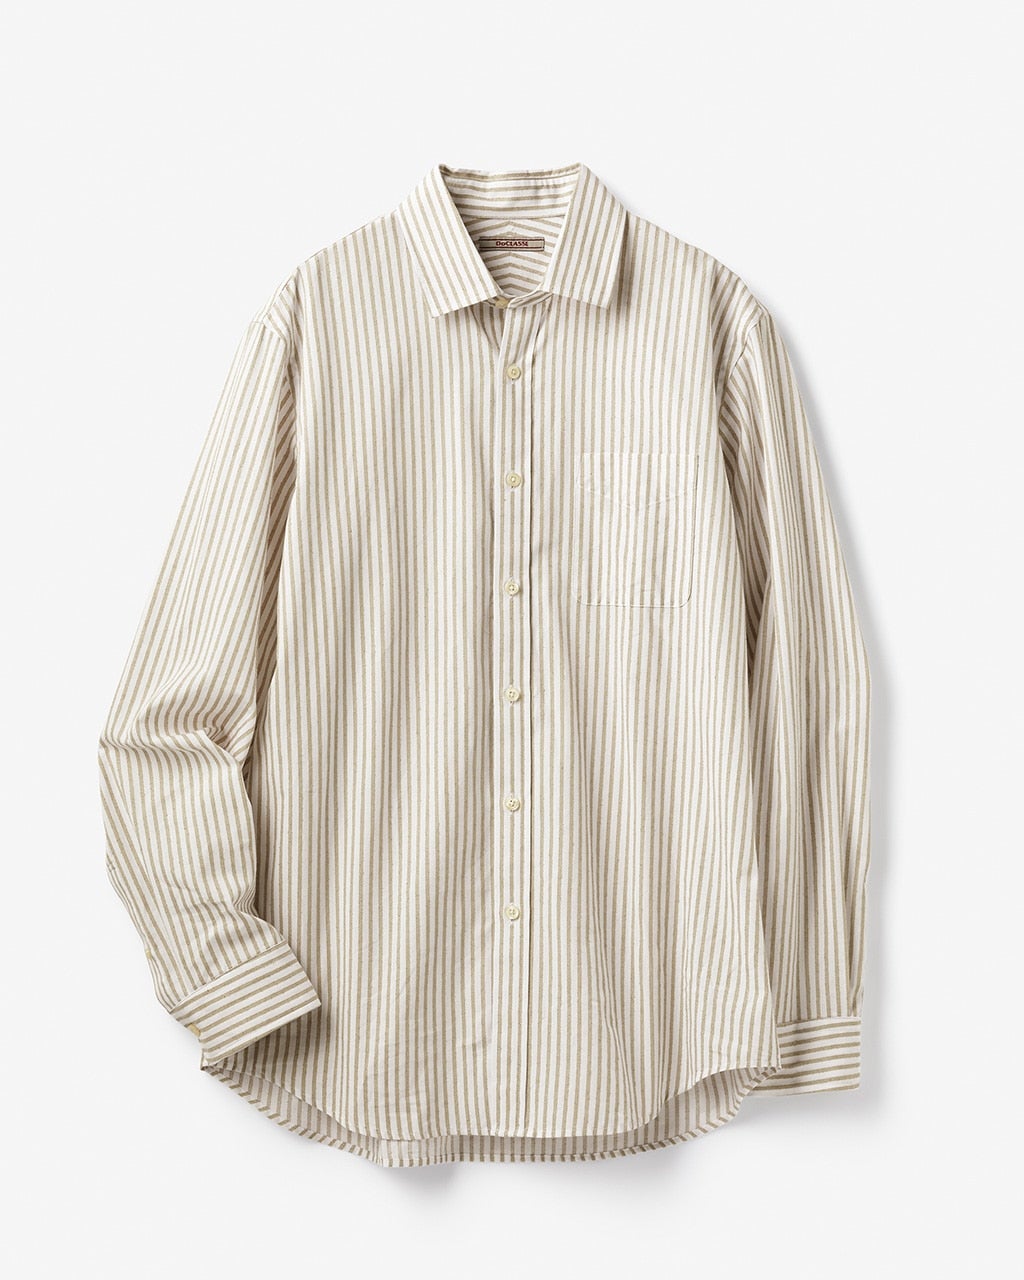 ブークレストライプシャツ/40代50代からのメンズファッション通販 DoCLASSE